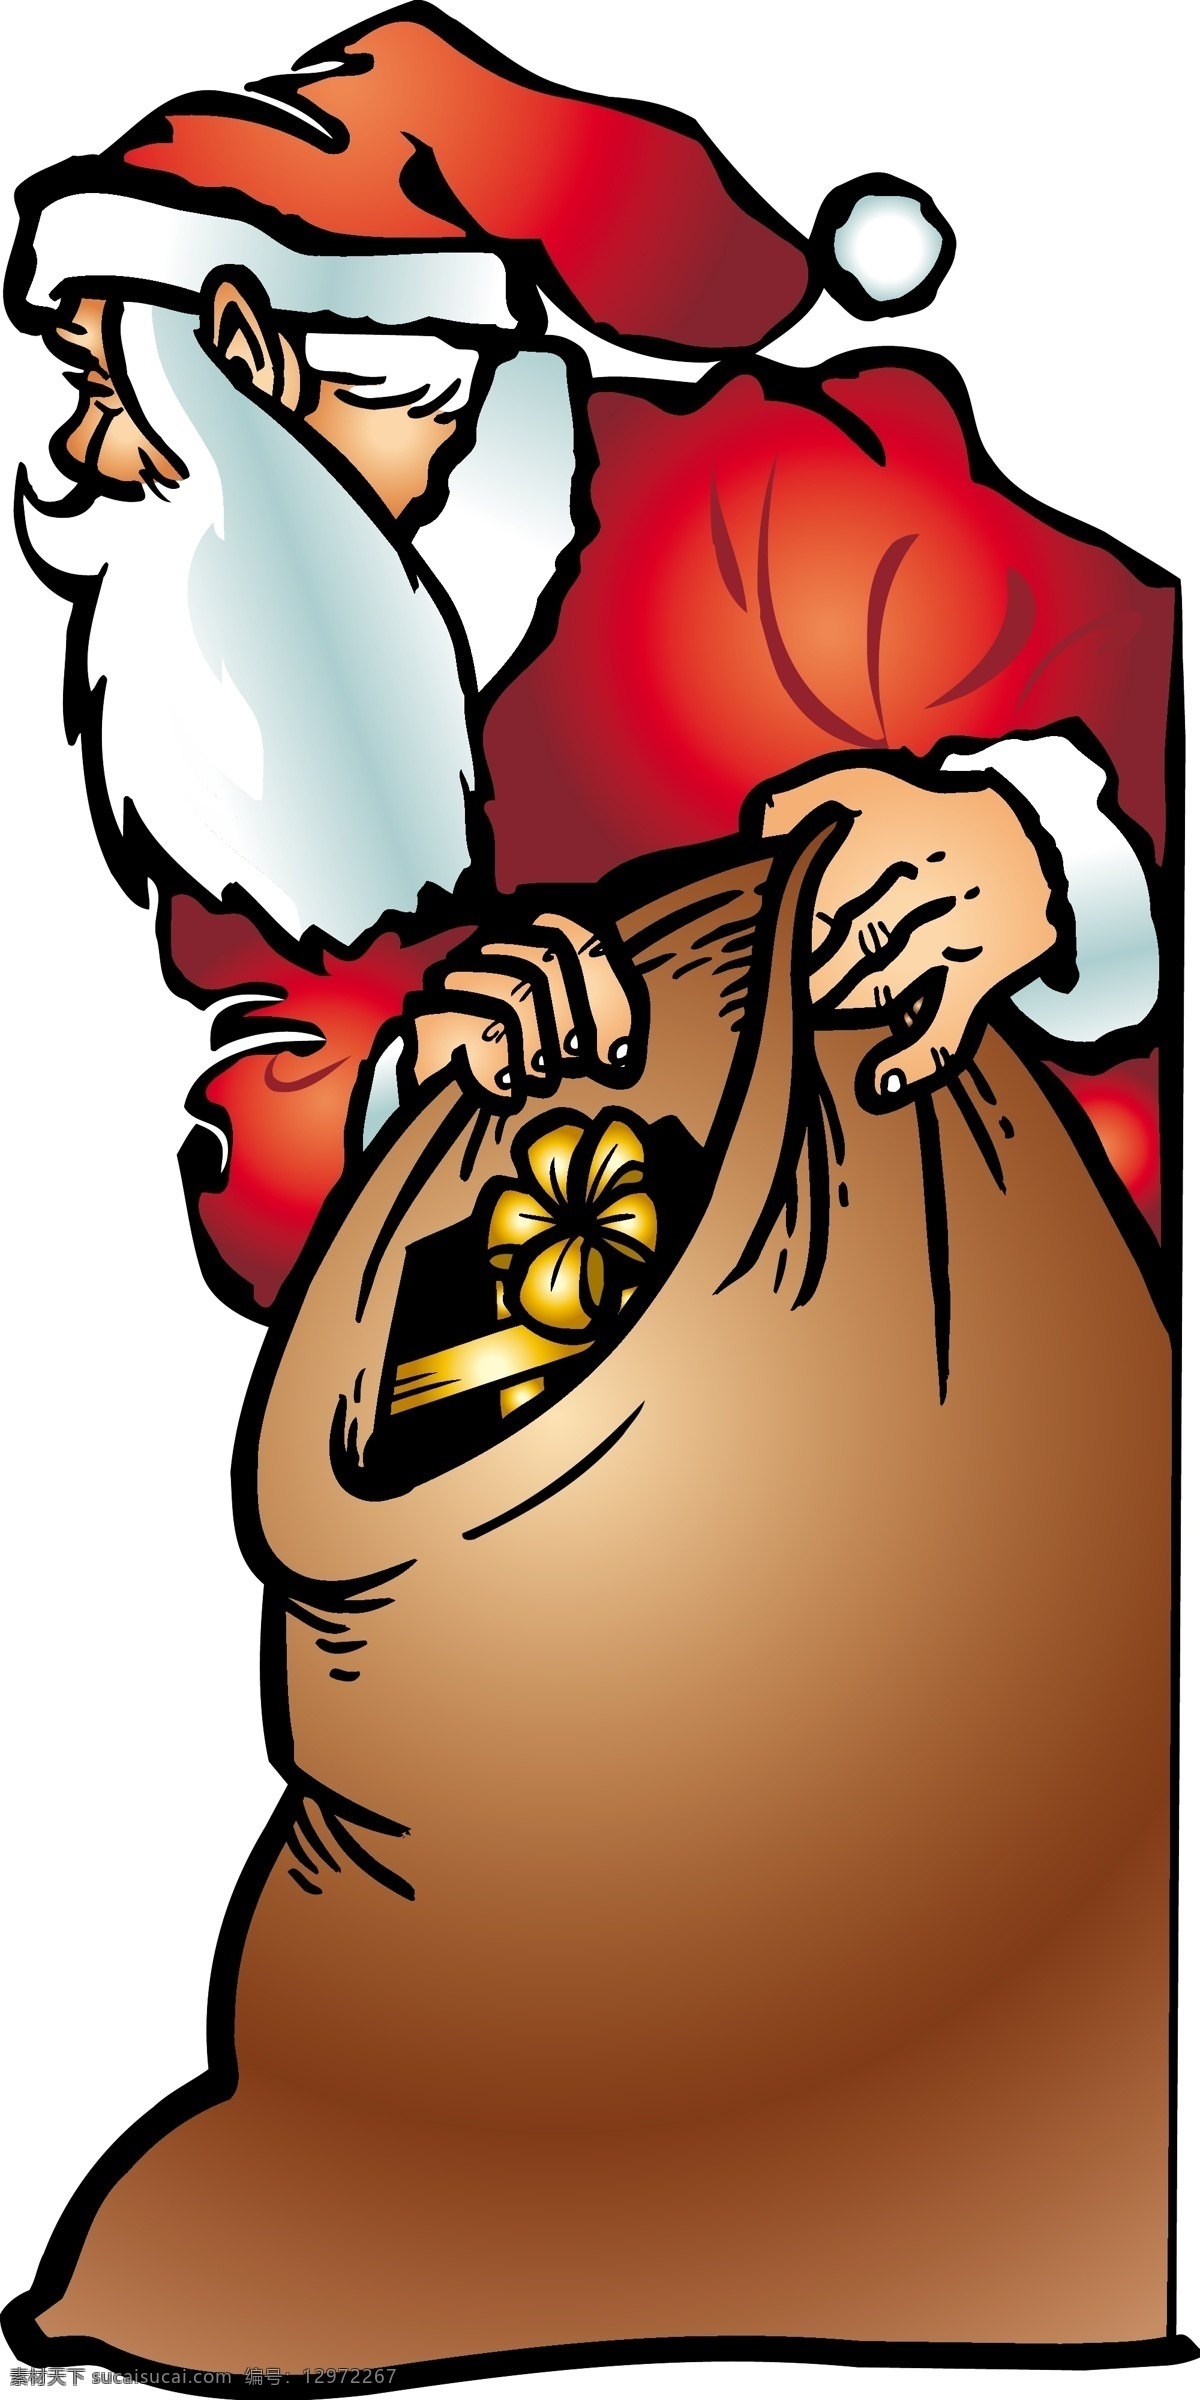 缤纷 圣诞节 系列 鸡腿 礼物 麋鹿 圣诞插画 圣诞老人 圣诞树 雪橇 烟囱 圣诞大餐 矢量